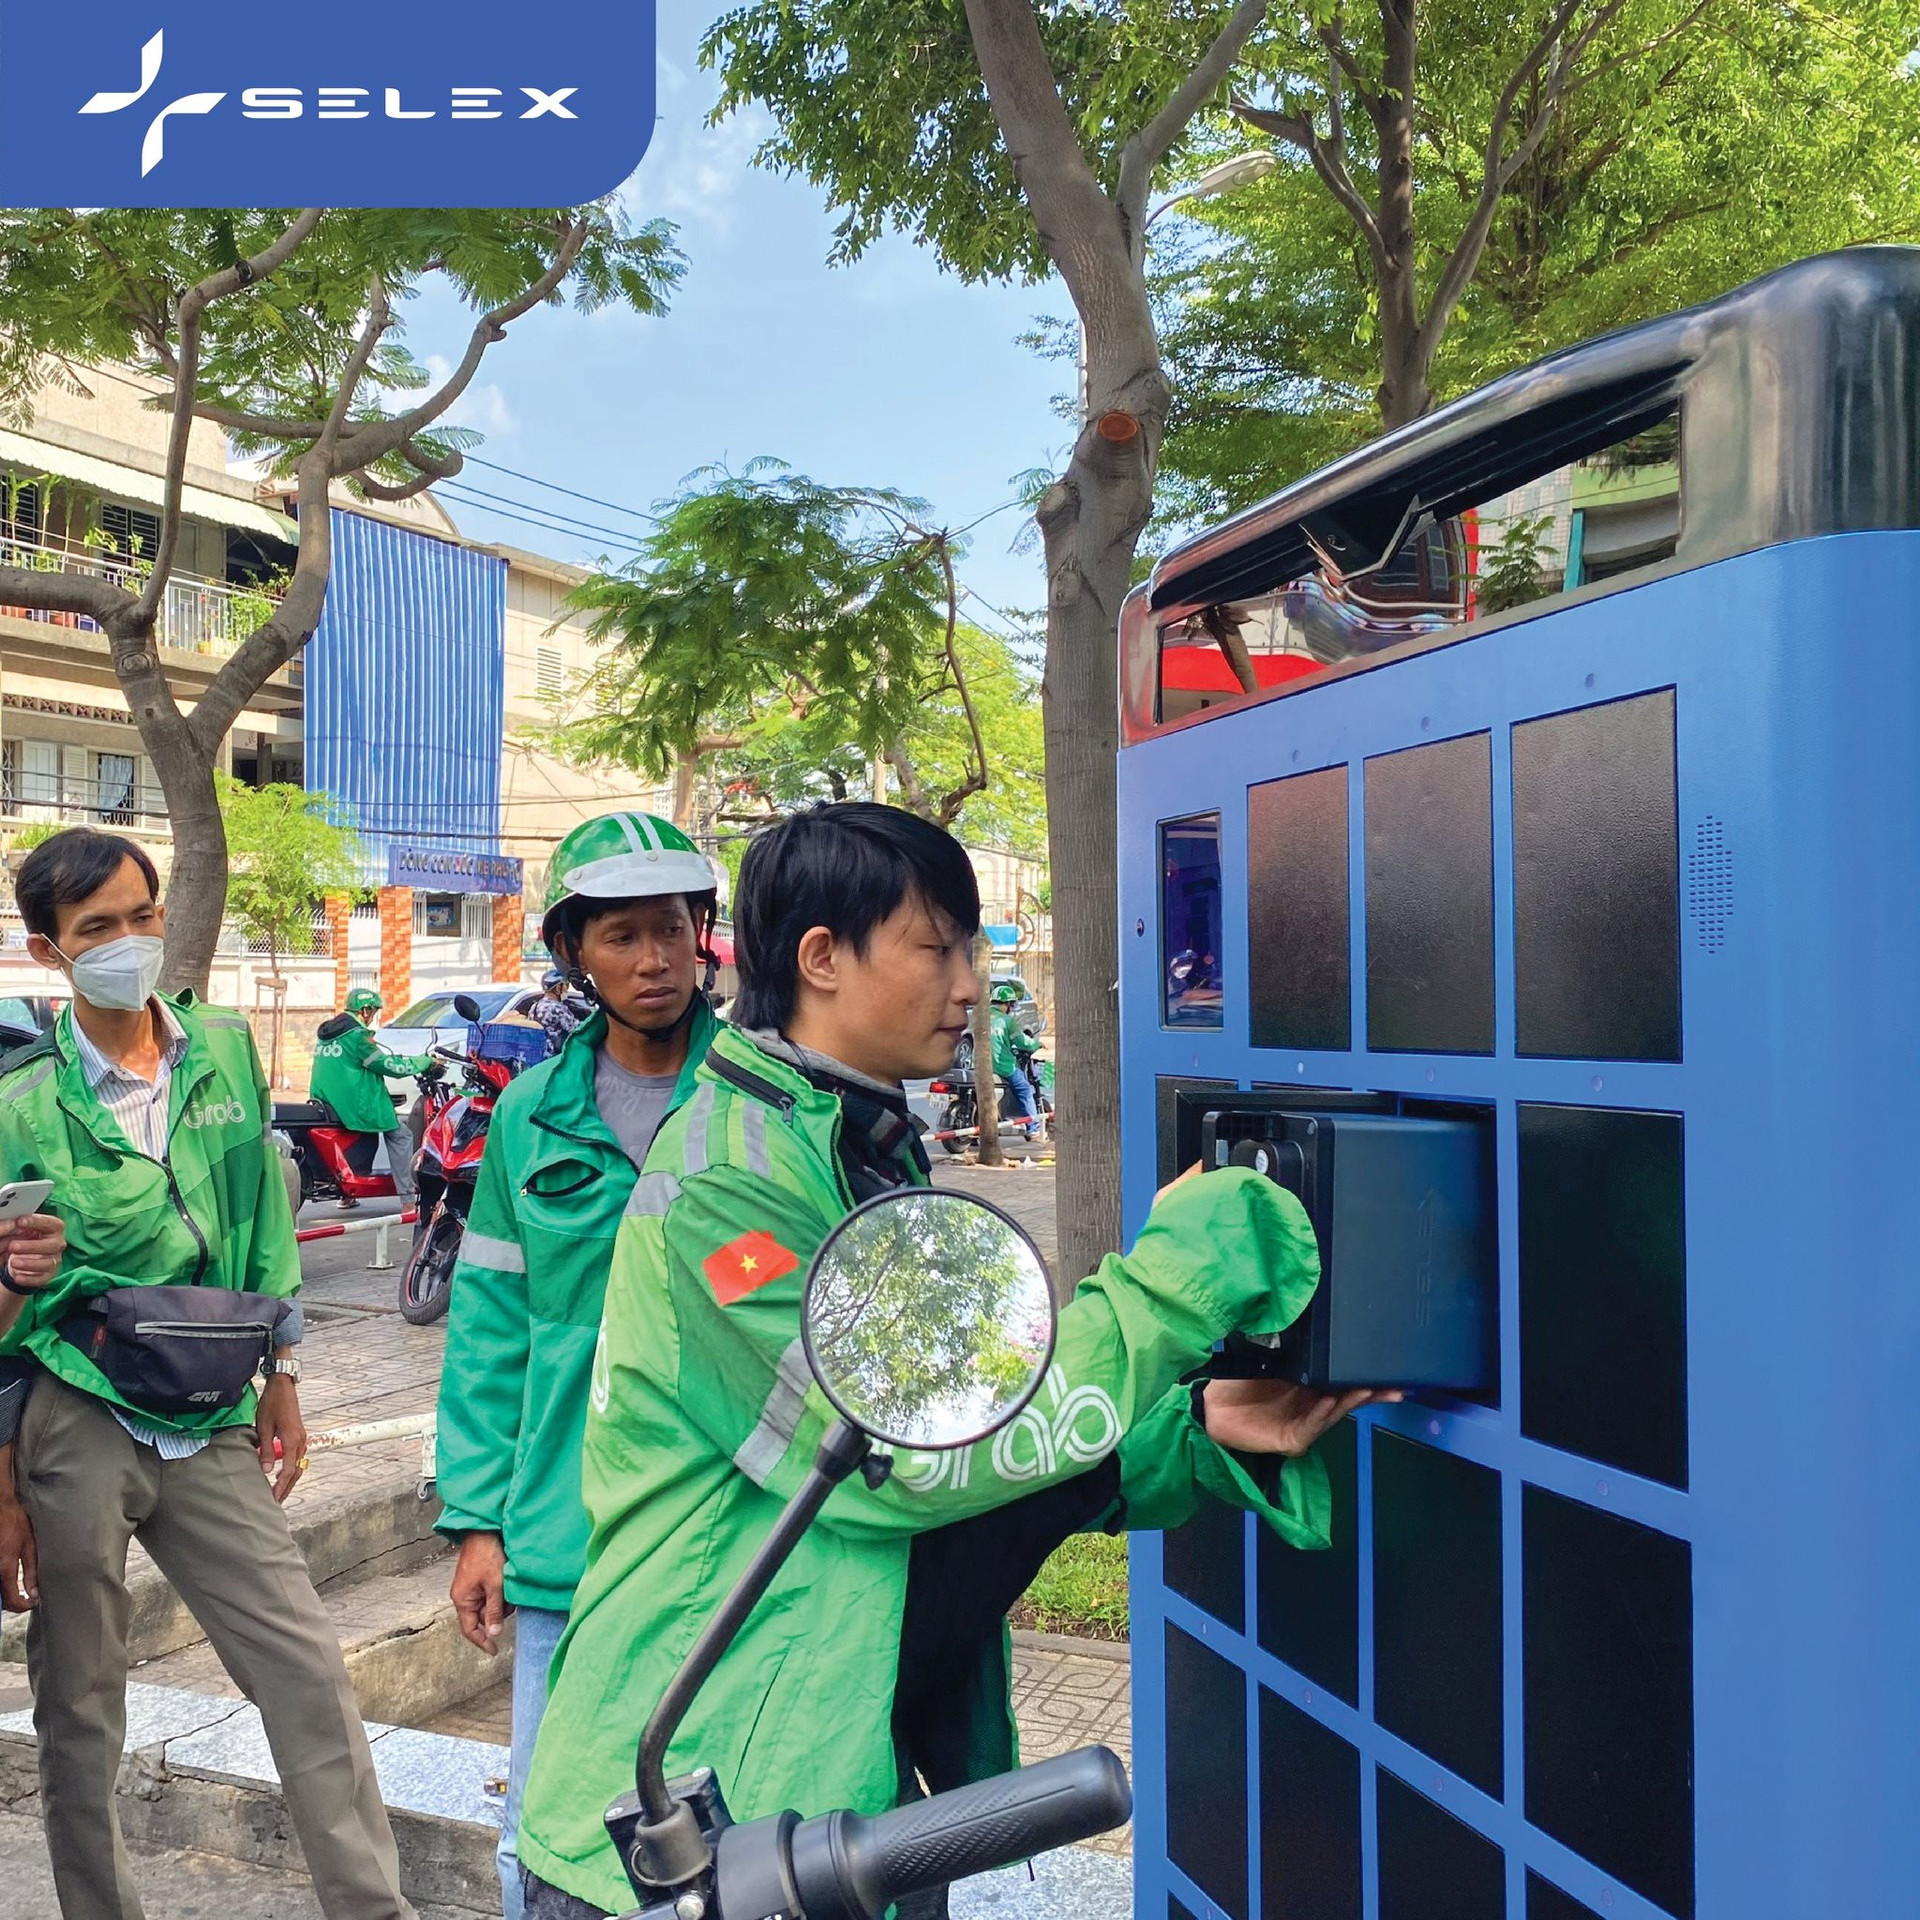 Chuyện làm trạm sạc của các hãng xe điện Việt: VinFast mở 150.000 cổng sạc, Dat Bike nhờ khách hàng... tự xây 80 điểm, Selex Motors khỏi cần xây trạm - Ảnh 5.